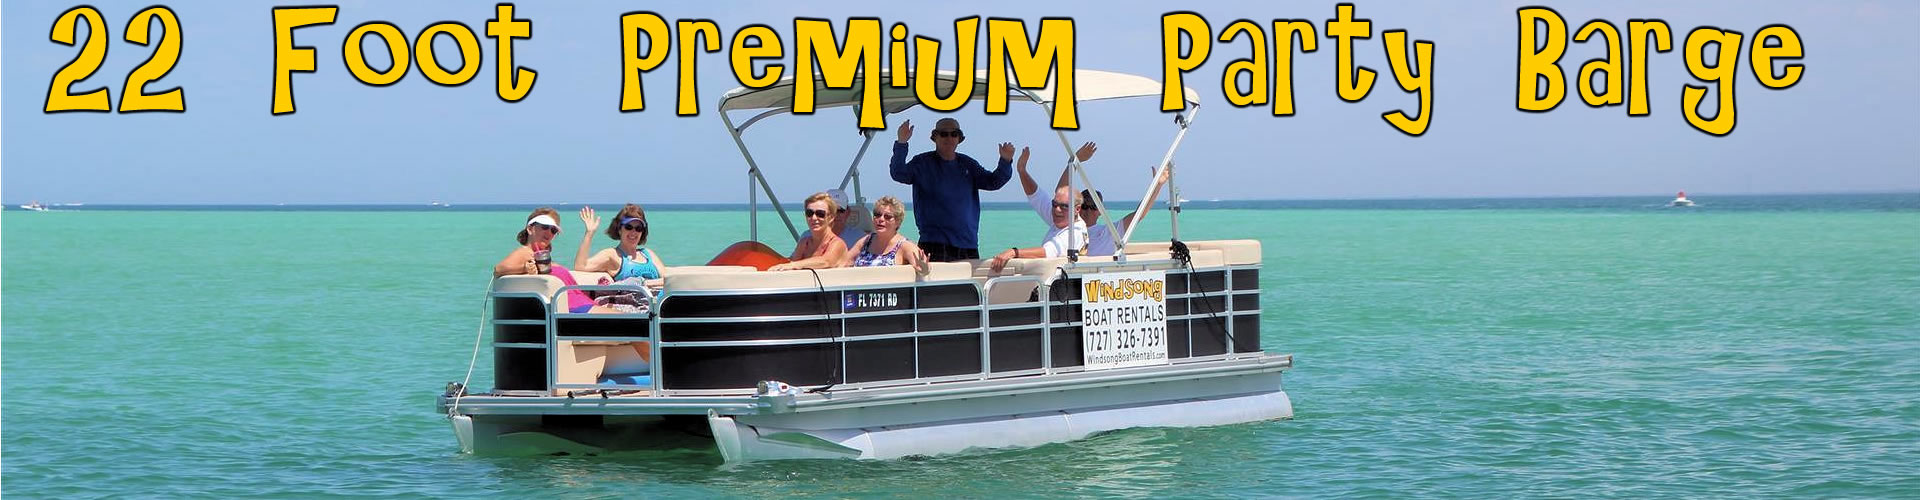 Boat Rental Rates, Tampa